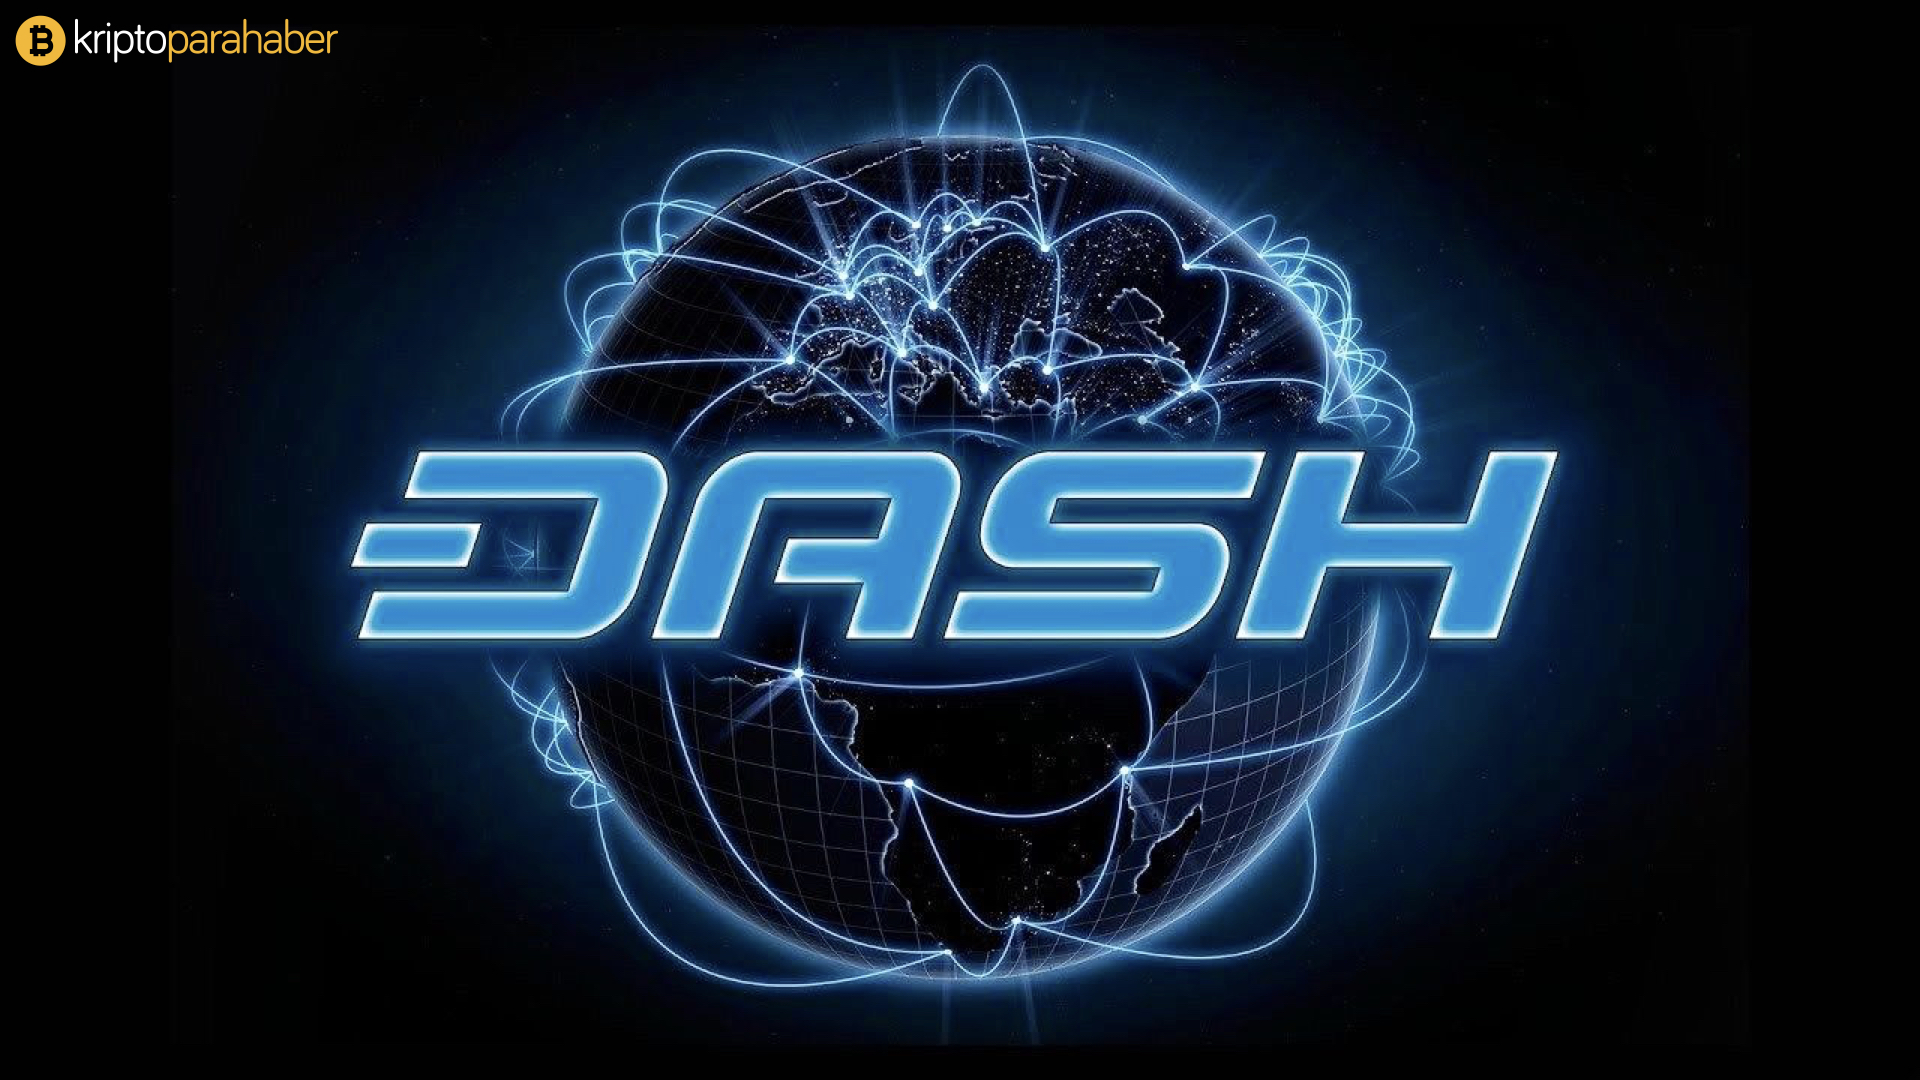 İddiaya göre DASH CEO'su işini kaybetmek üzere olabilir.